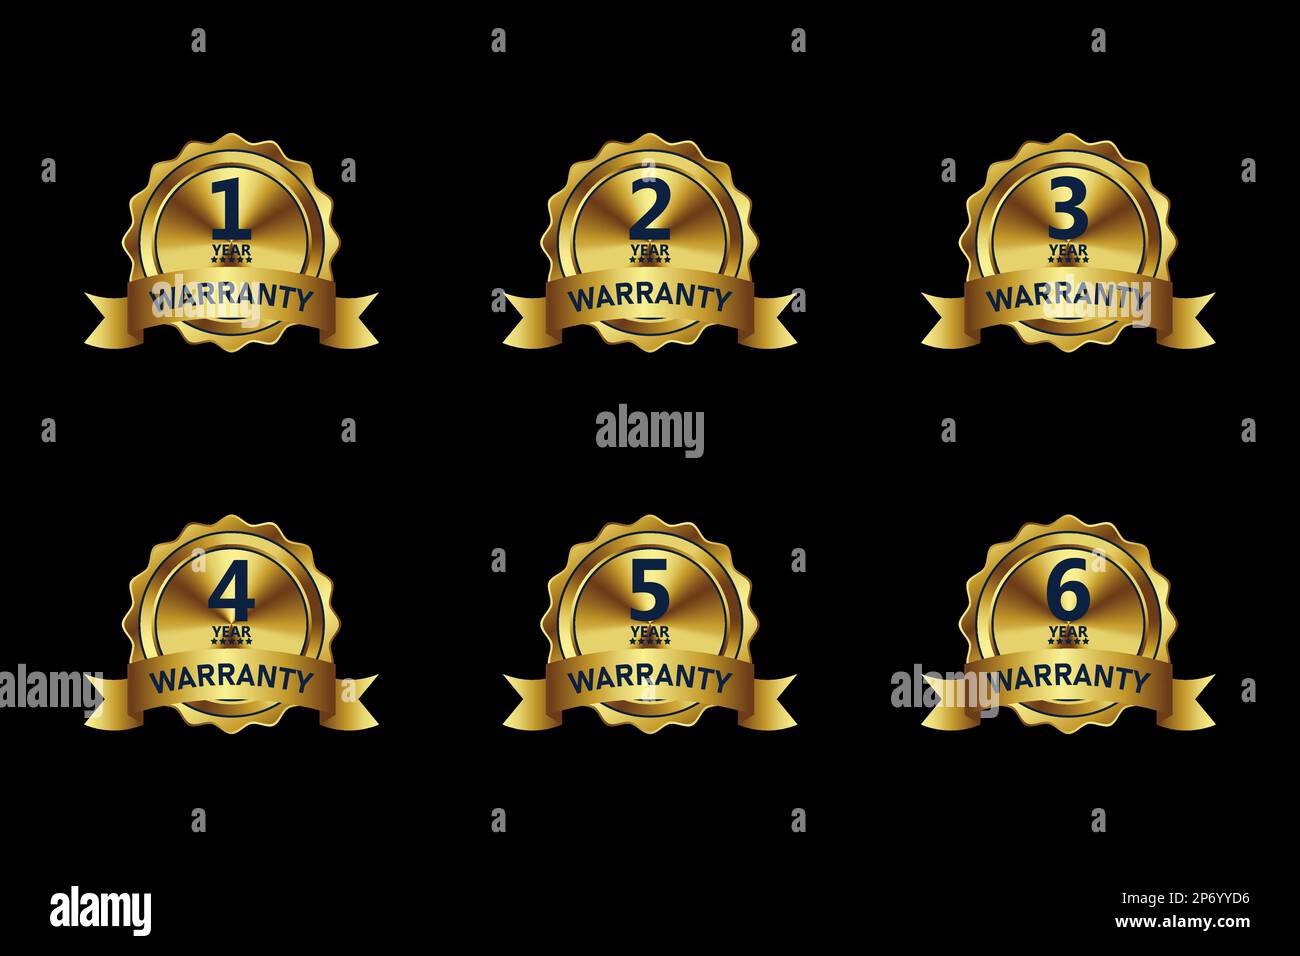 Gold Warranty Badge Design Kollektion verschiedene Jahre, mit Premium Farben, Siegeln, Medaillen, Schilden, Abzeichen, Schriftrollen und Ornamente Stock Vektor